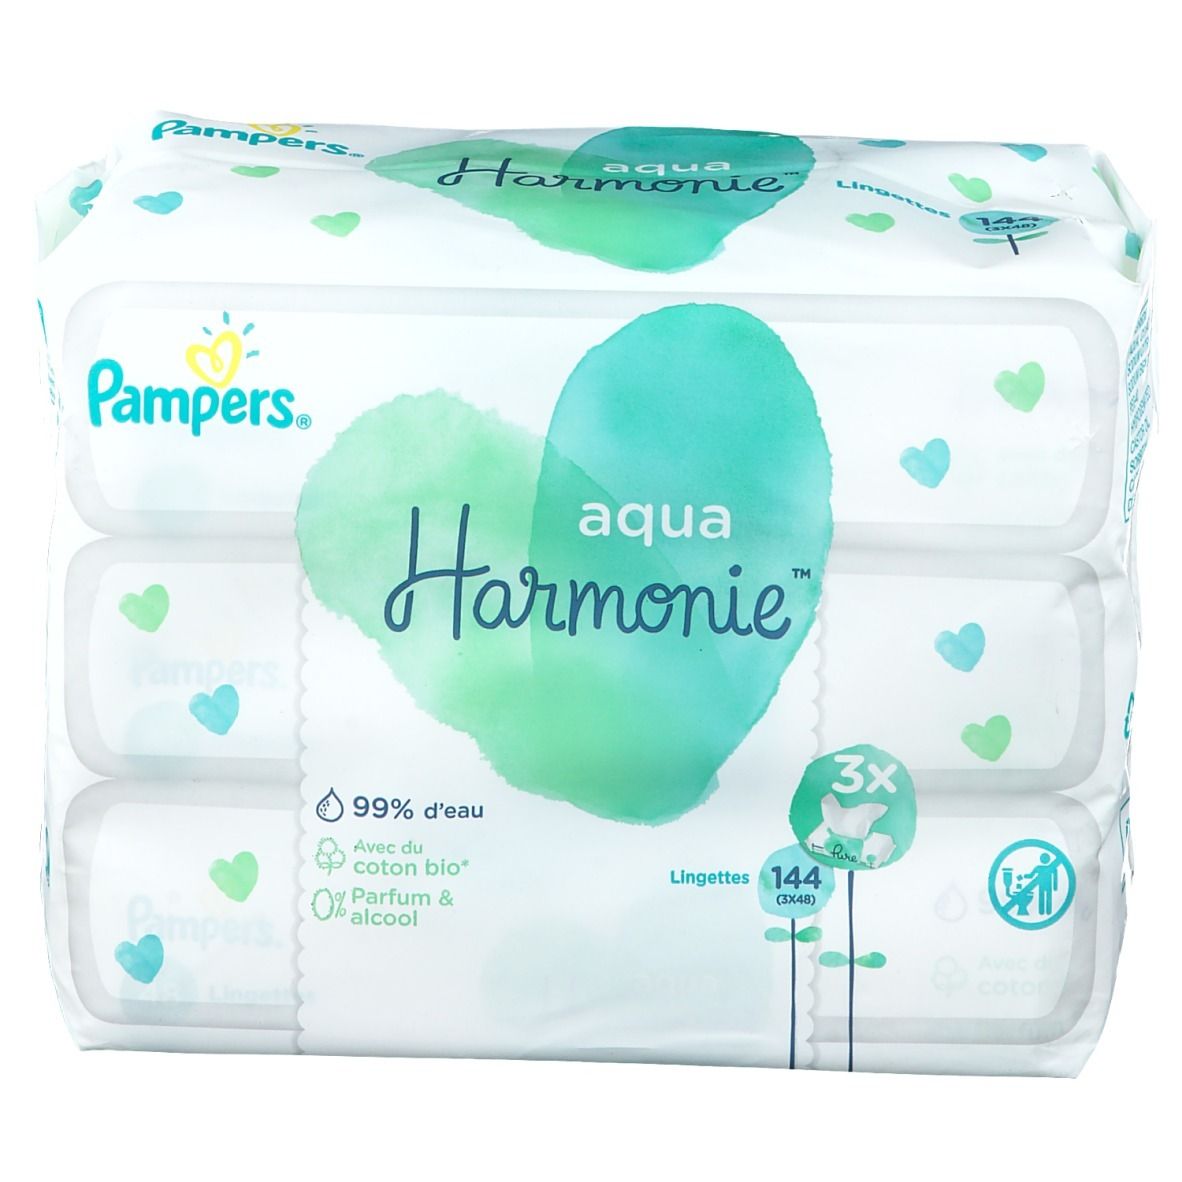 Pharmacie De Lherm - Parapharmacie Pampers Aqua Harmonie Lingette Imprégnée  Paquets/48 - Lherm